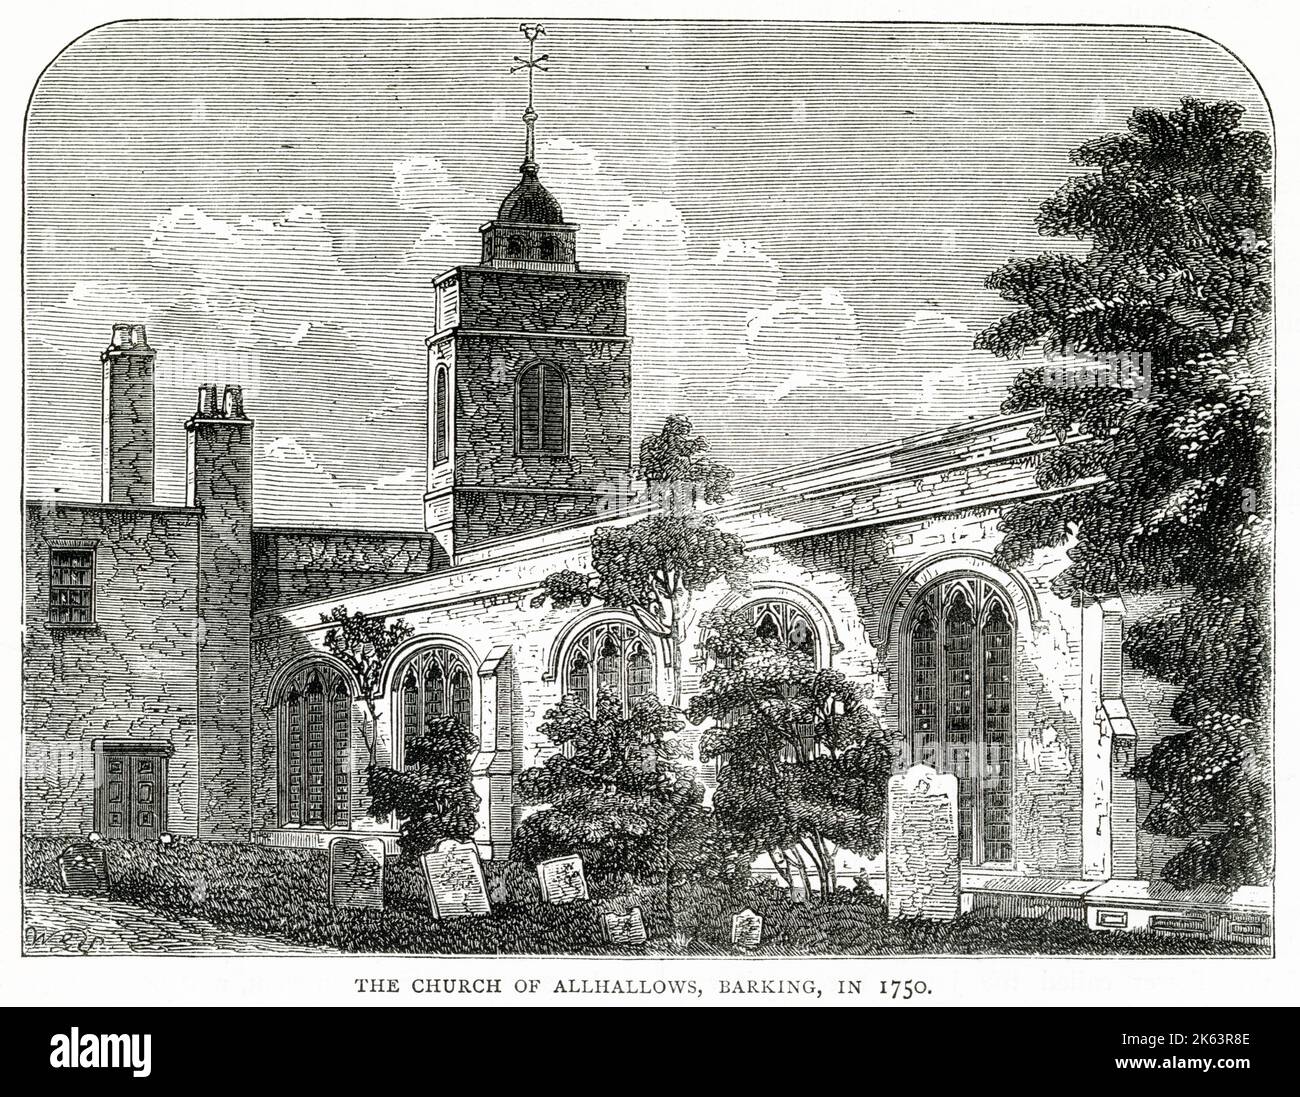 All Hallows by the Tower, manchmal auch bekannt als All Hallows Barking, gilt als die älteste Kirche in der City of London. Es überlebte das große Feuer von London im Jahr 1666, wurde aber während des Blitzes im Zweiten Weltkrieg schwer beschädigt Nach umfangreichen Rekonstruktionen wurde sie 1957 umgewidmet. Stockfoto